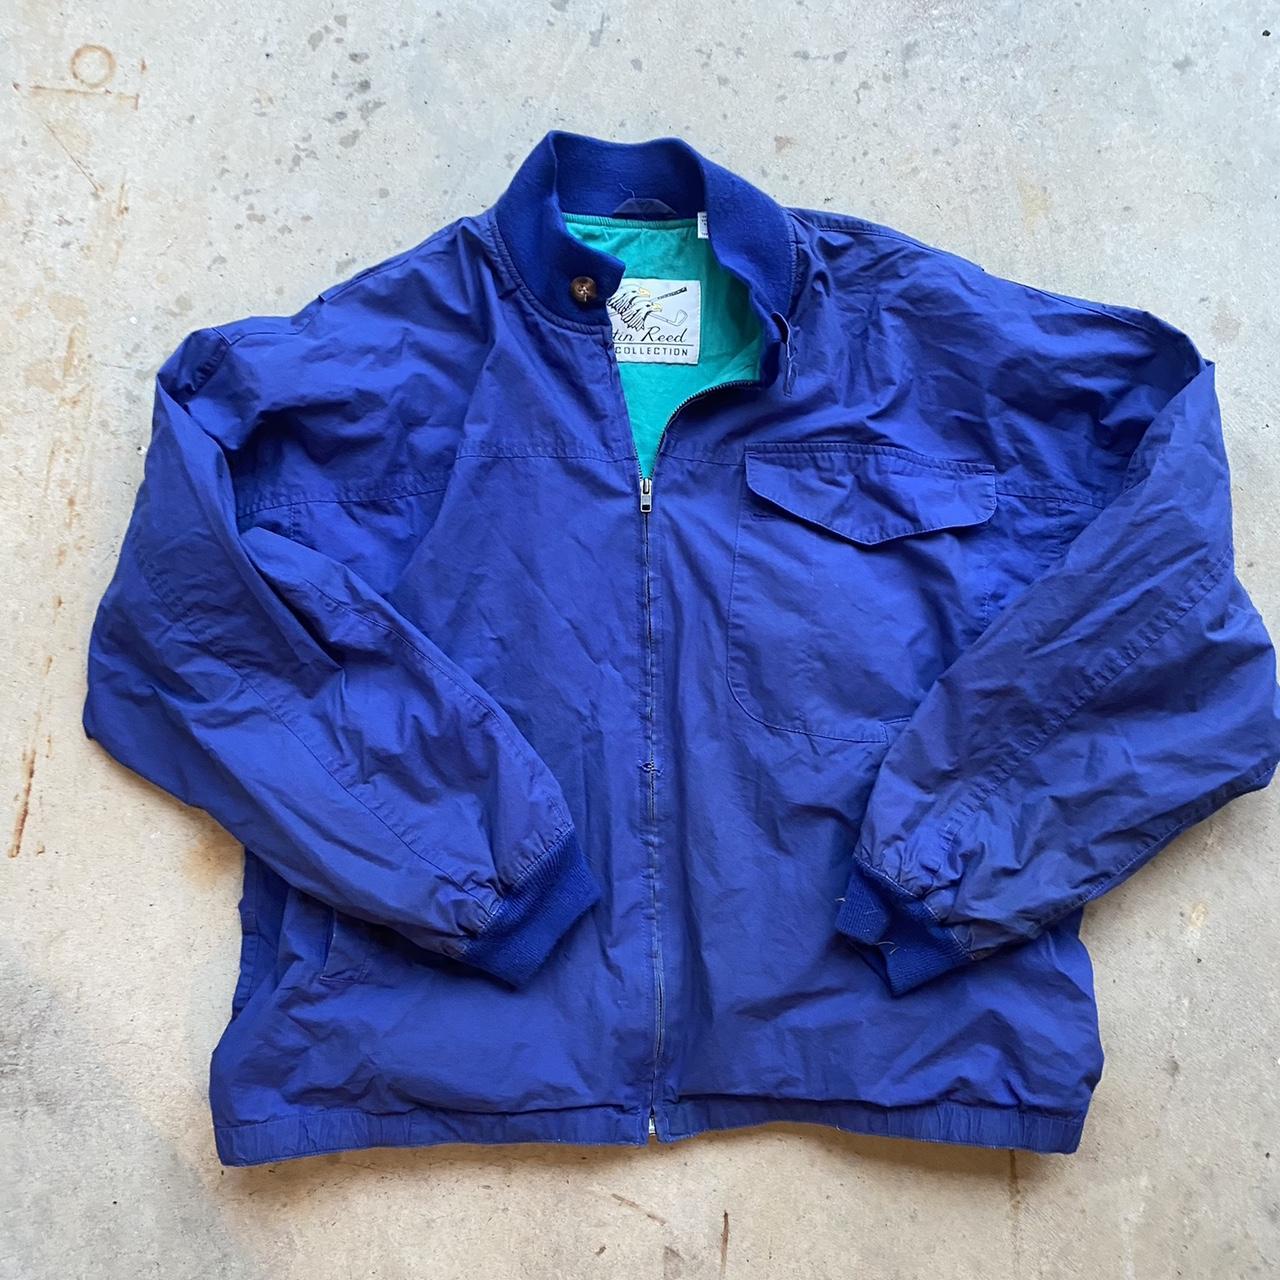 Vintage blue boxy 90s Austin Reed jacket size... - Depop